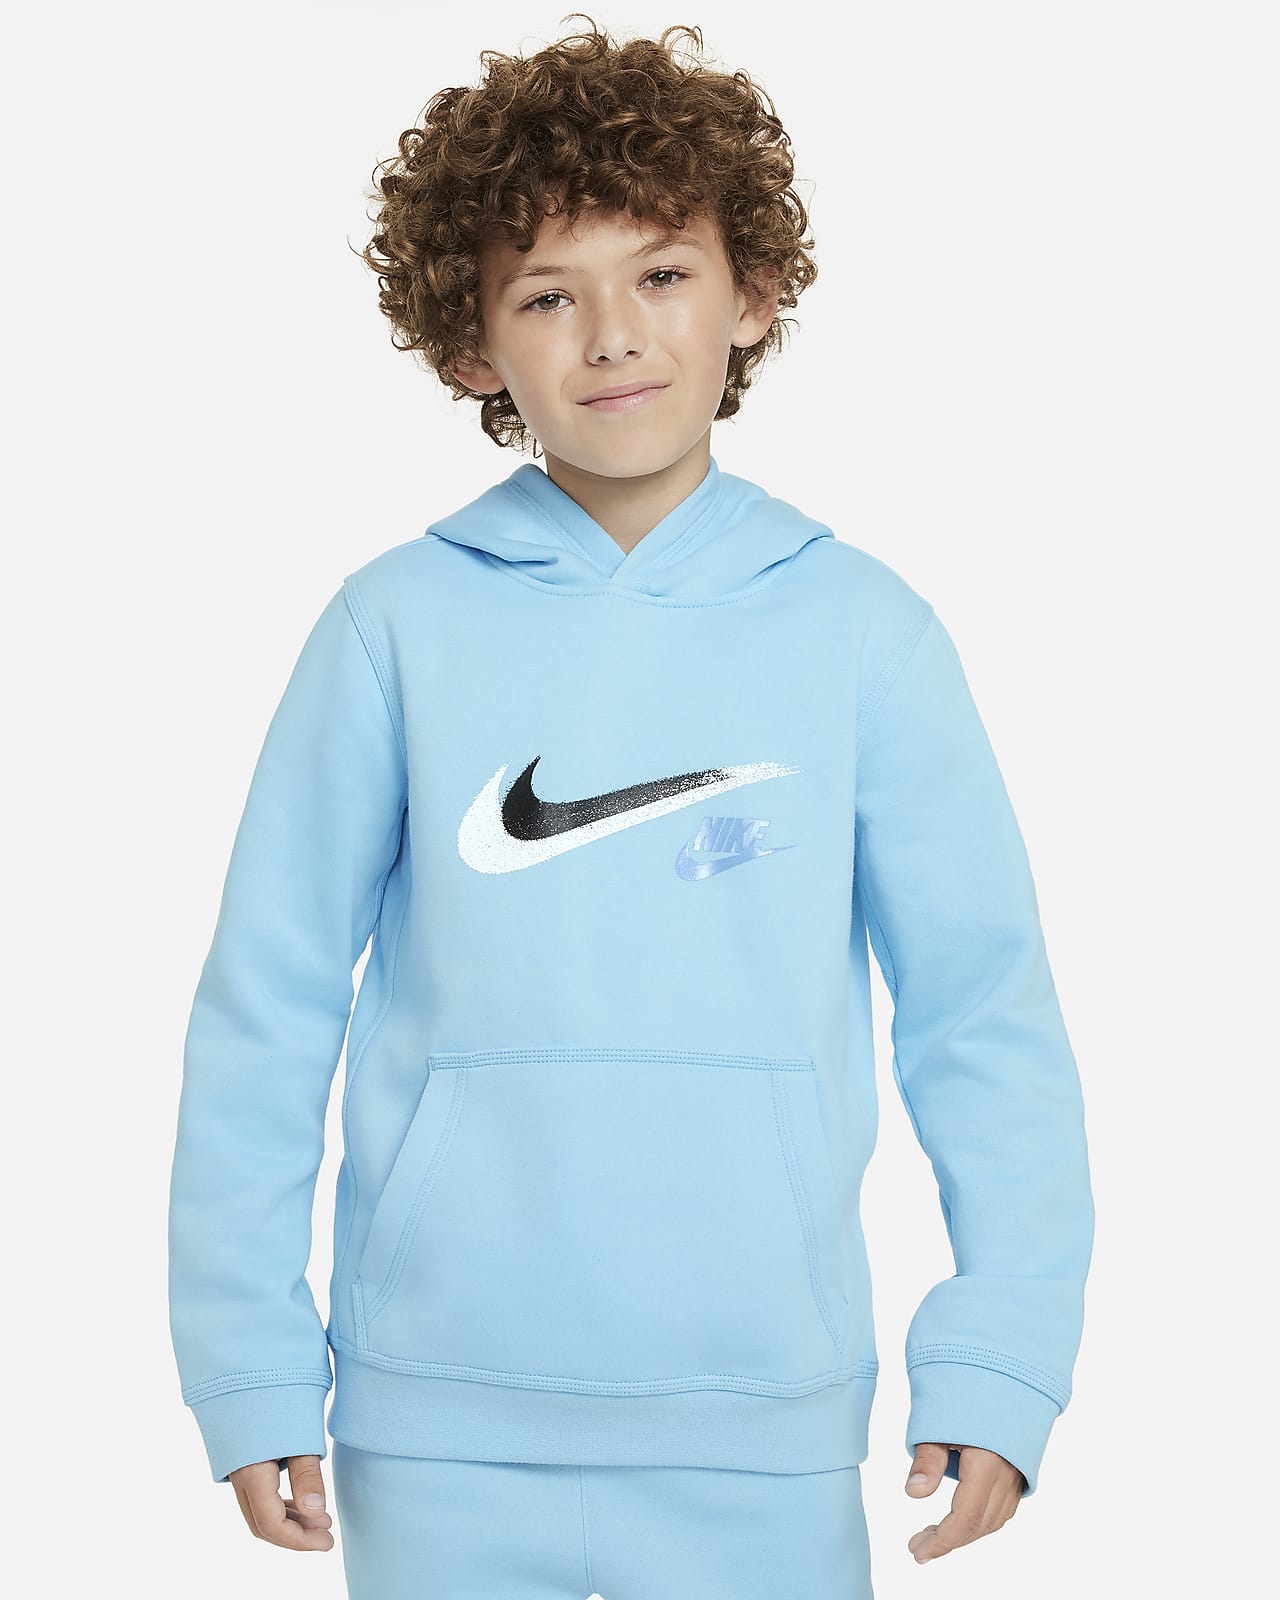 Flísová mikina Nike Sportswear s kapucí a grafickým motivem pro větší děti (chlapce)